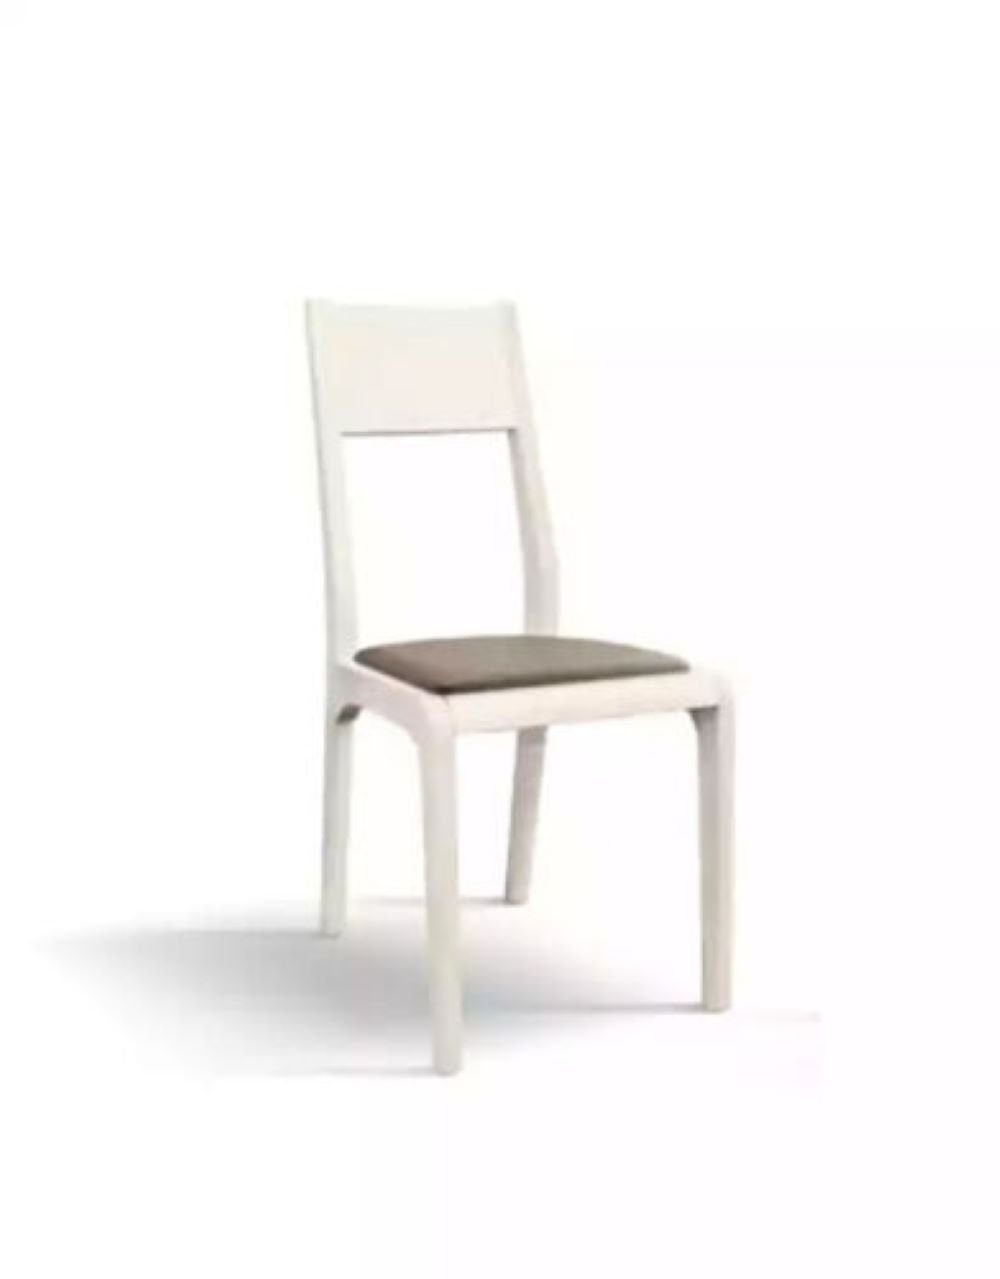 Made holz, Wohnzimmer Esszimmerstuhl JVmoebel Stuhl in Küchenstuhl Stuhl Italy Beine aus aus